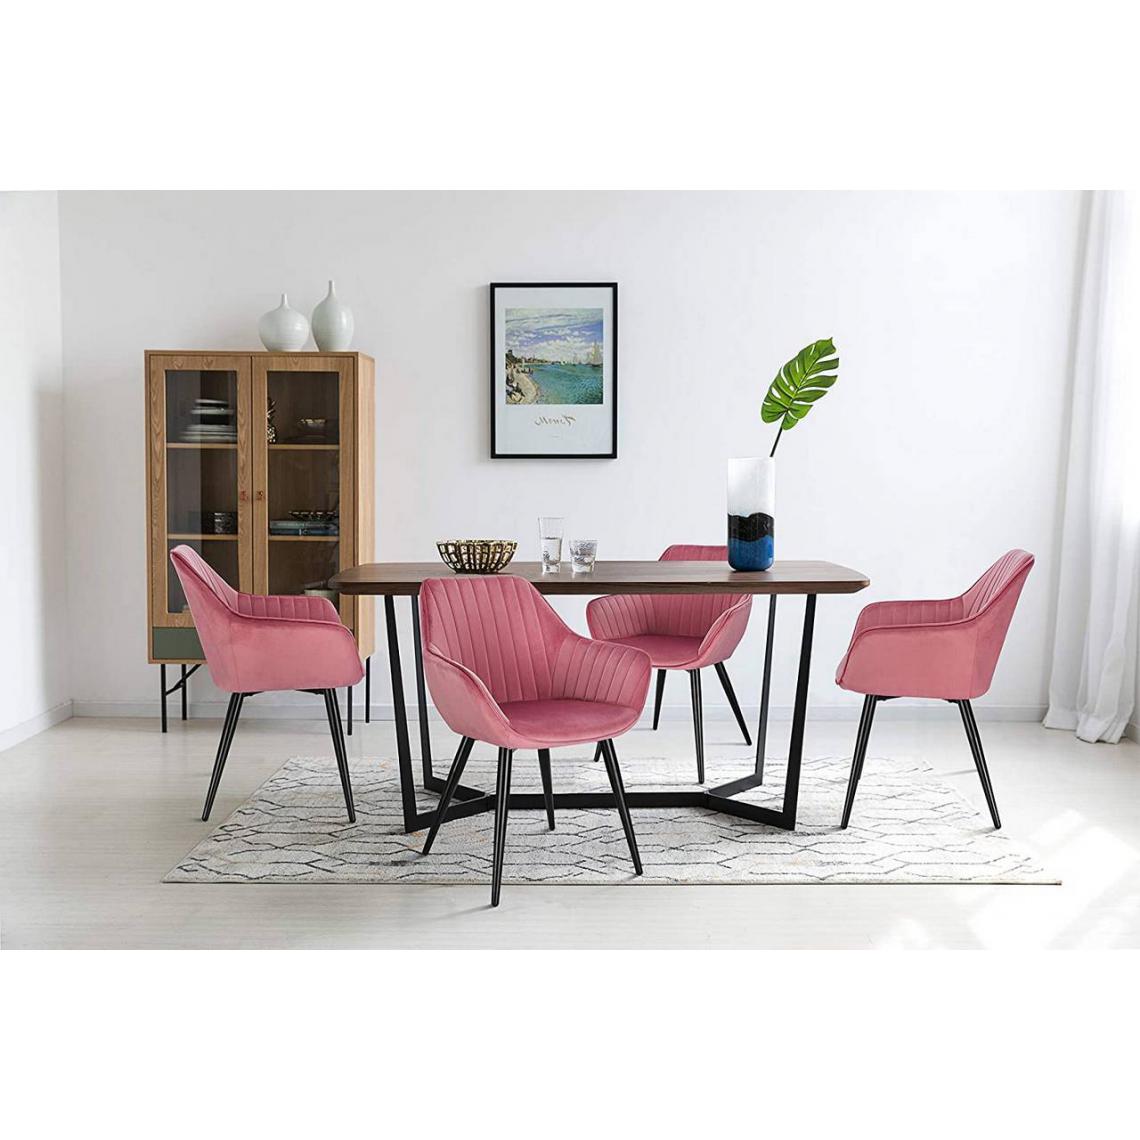 MercatoXL - Salle à manger chaise avec accoudoirs en jambes de velours et de métal - modèle rose - Tables à manger